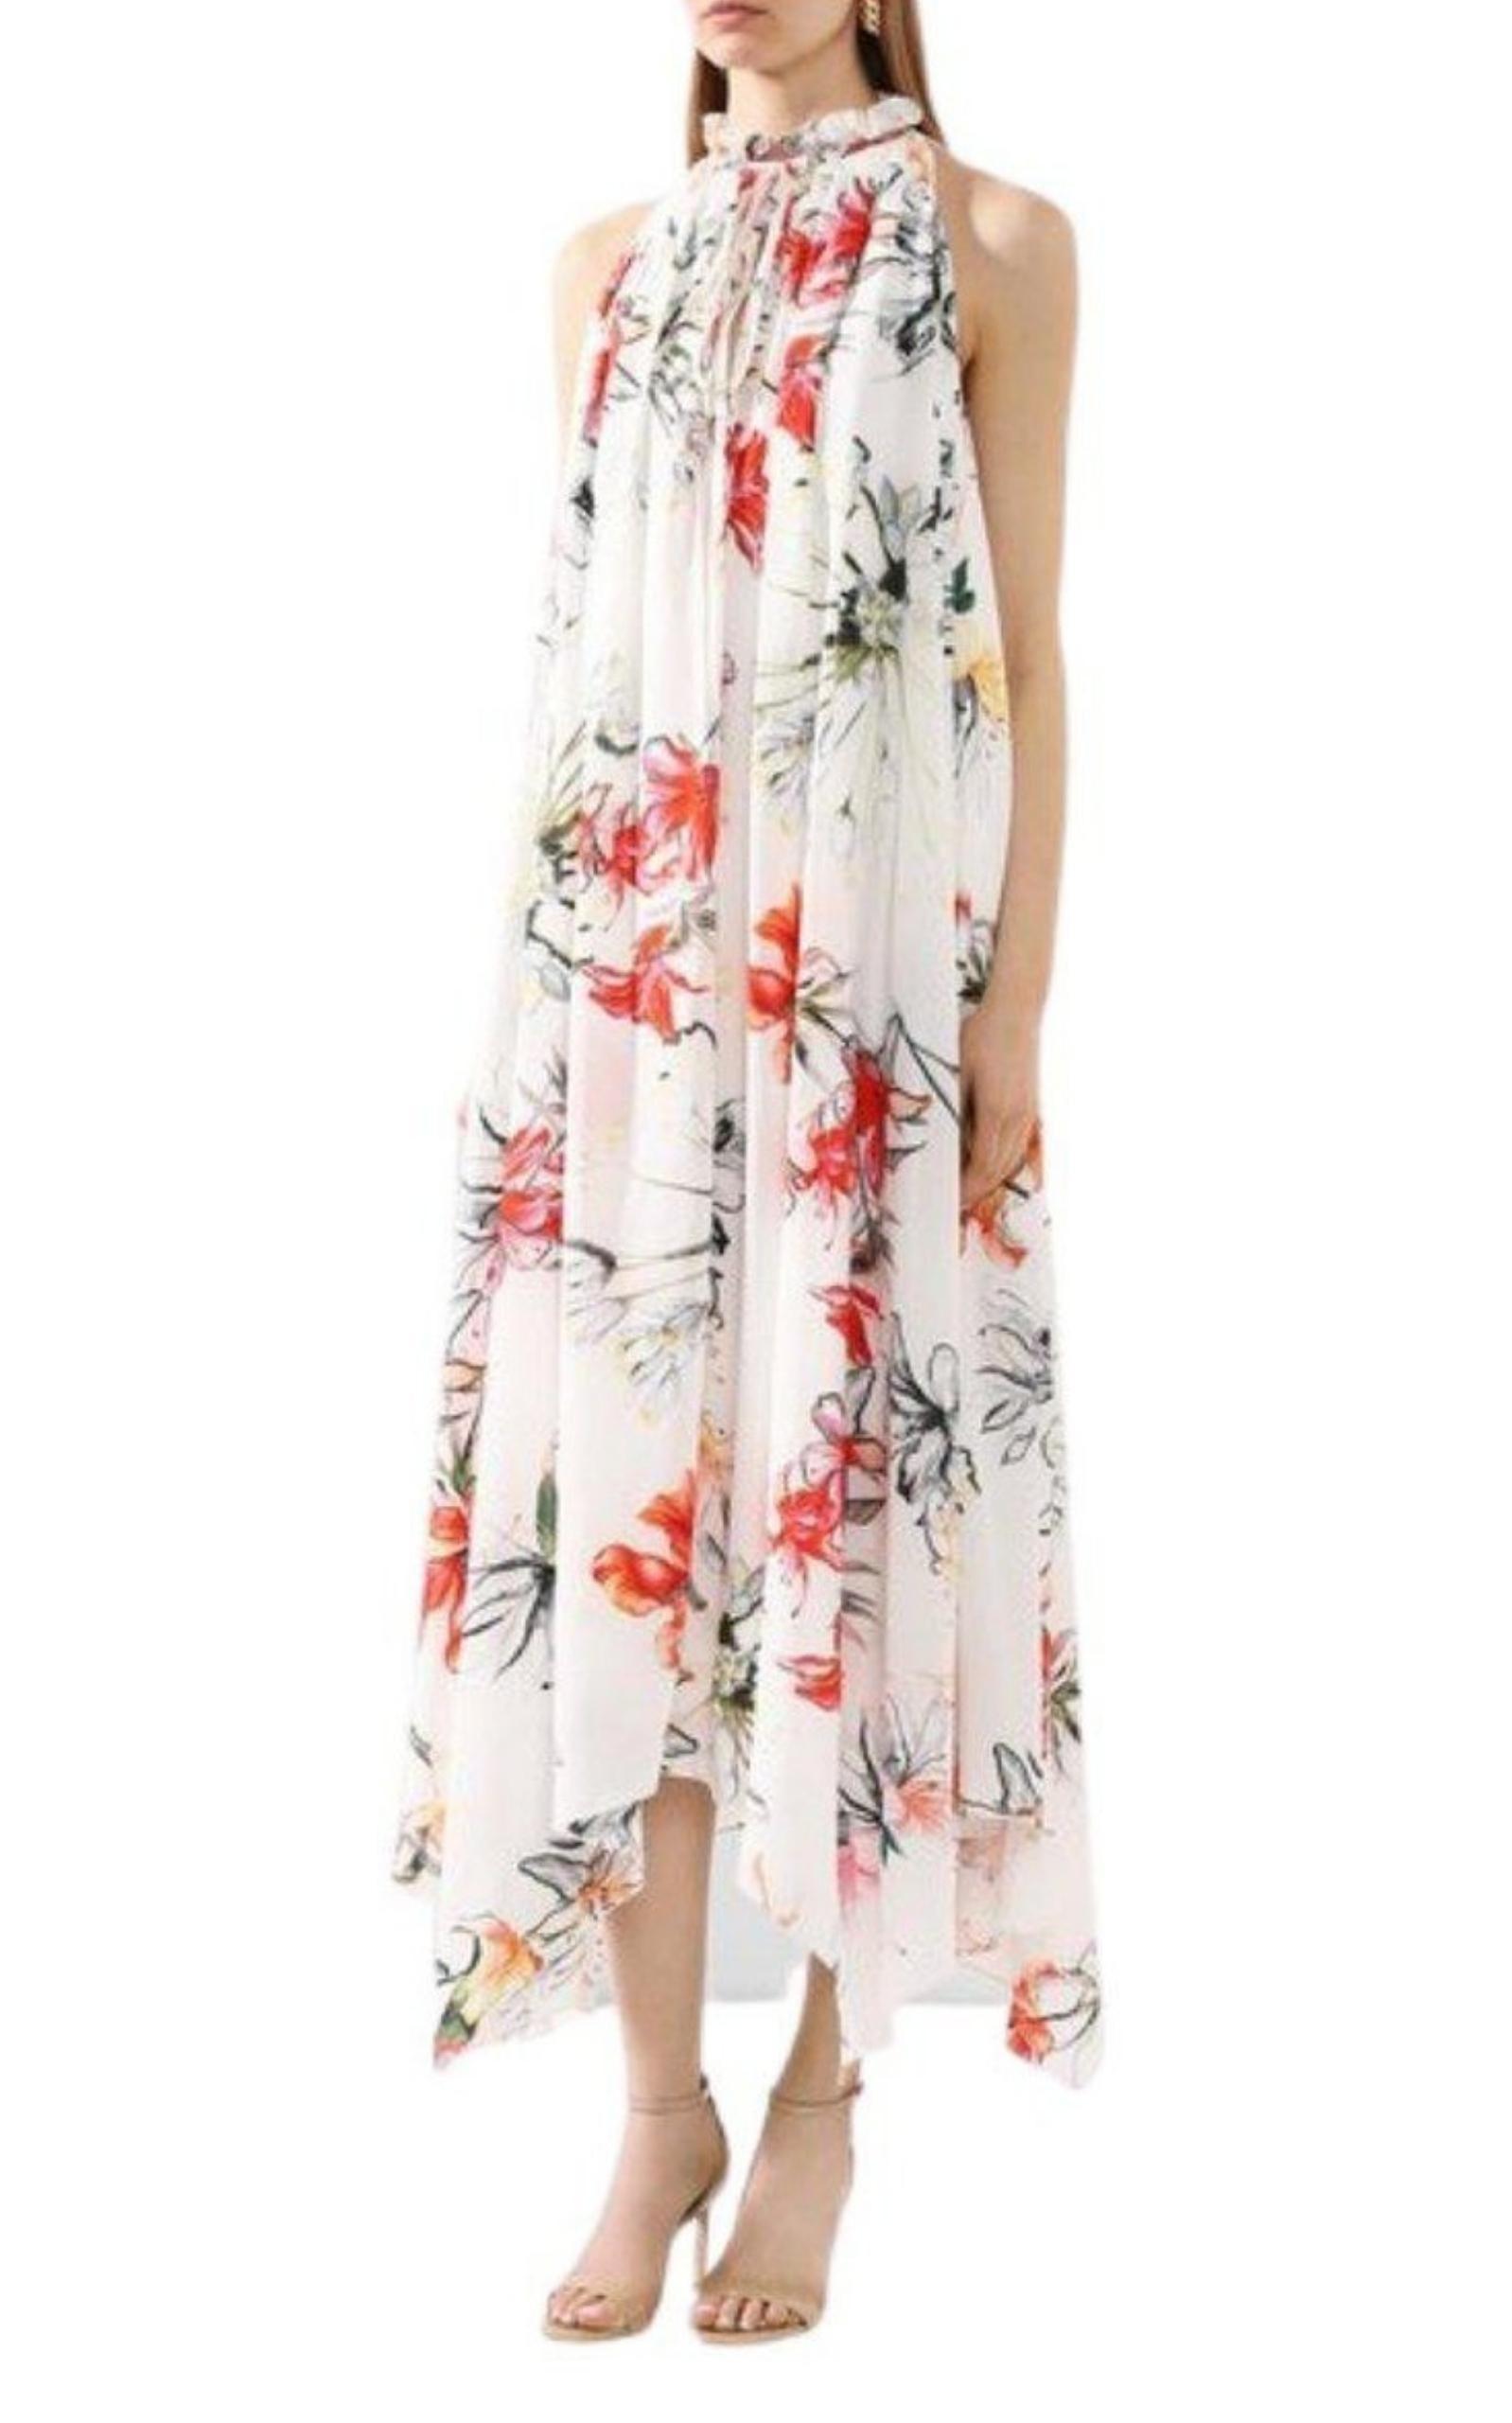  Alexander McQueenEndangered Flower Print Sleeveless Dress - Runway Catalog